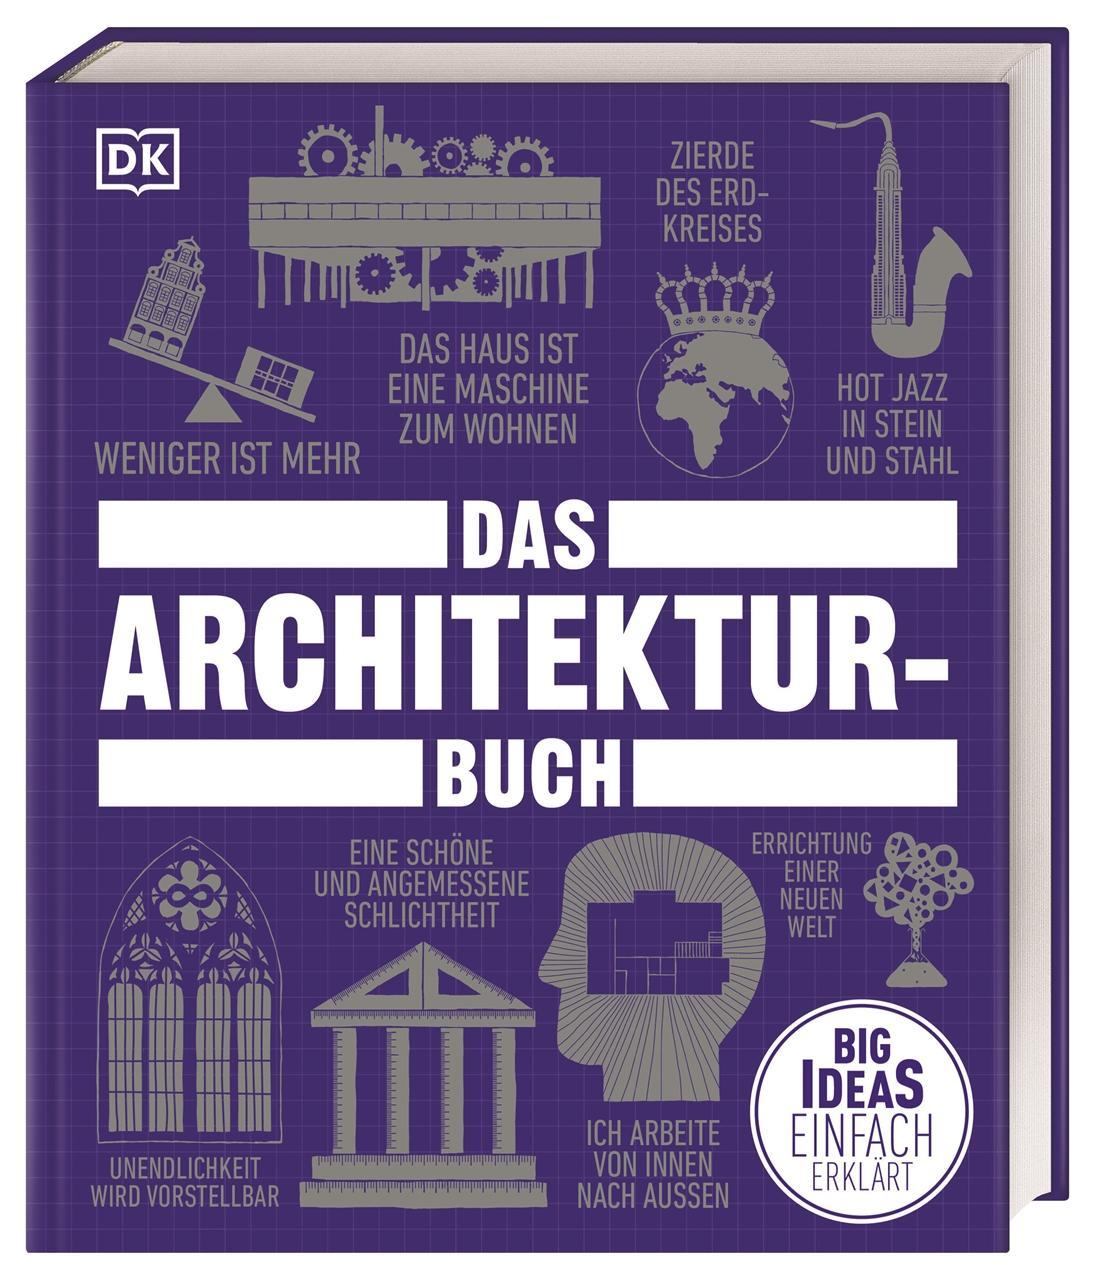 Big Ideas. Das Architektur-Buch: Big Ideas - einfach erklärt. Geballtes Wissen über die Geschichte der Architektur, Epochen, Stile, berühmte Architekt\*innen und Denkmäler